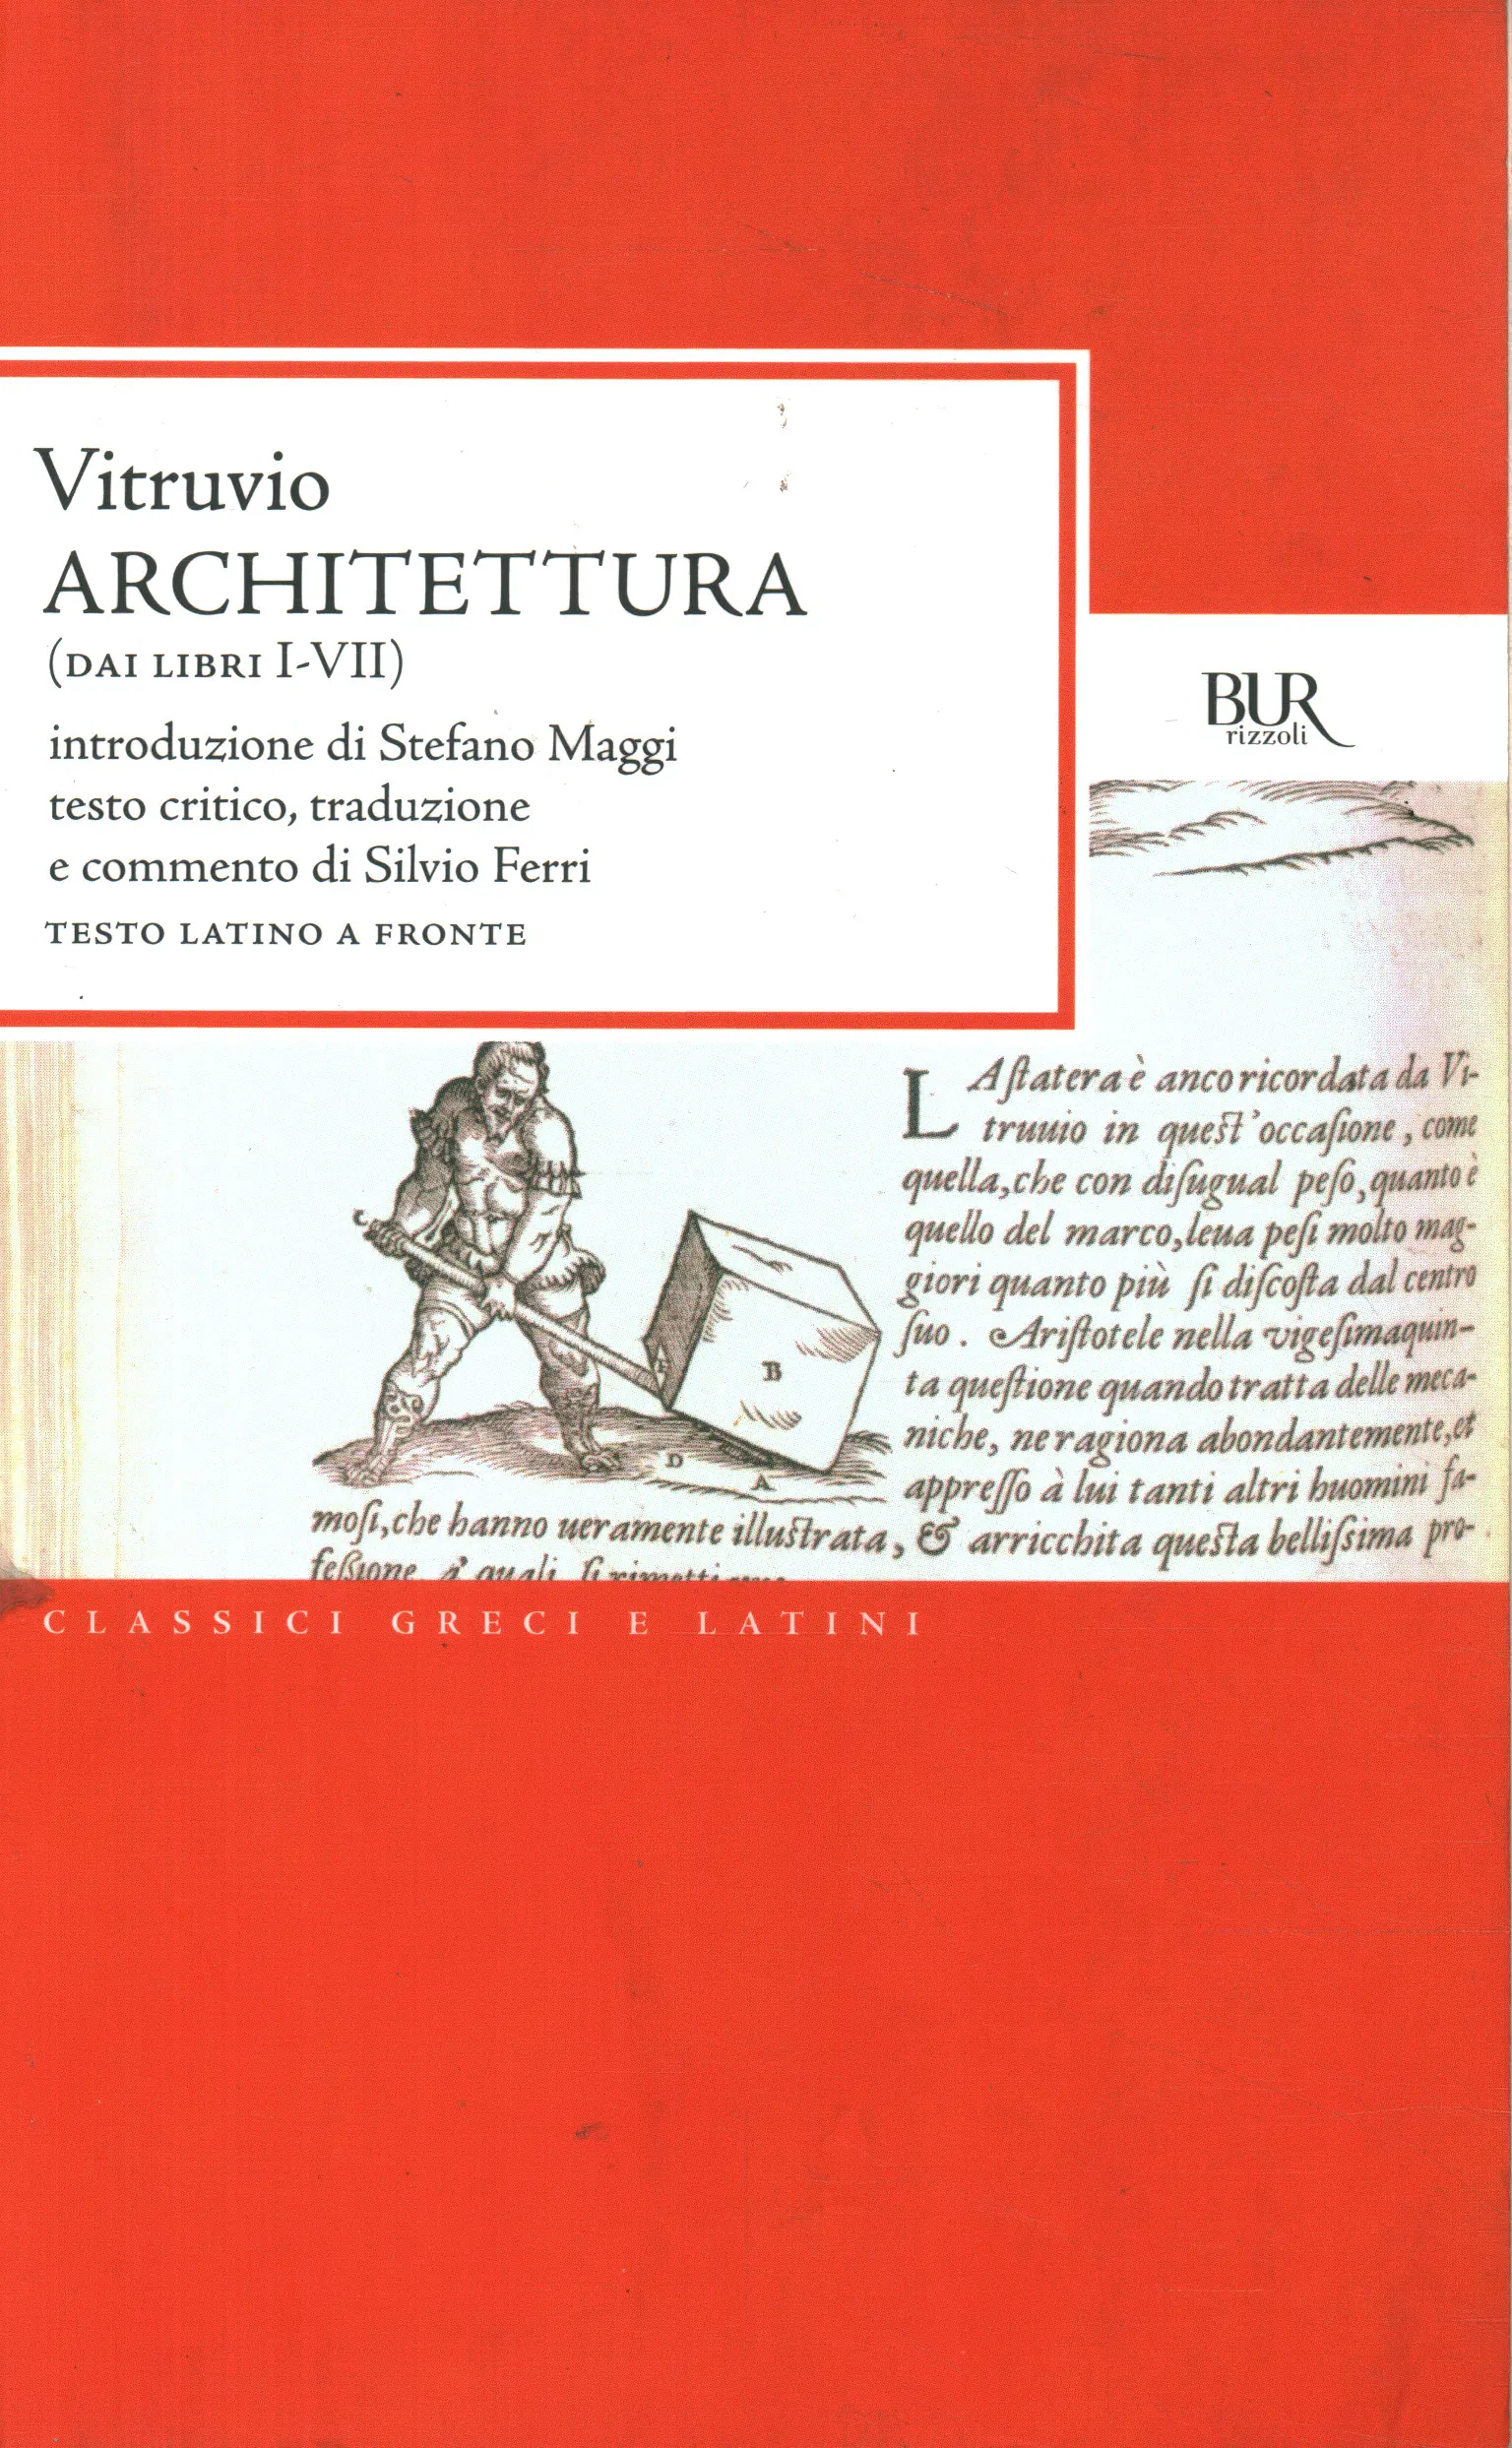 Architettura (dai libri I-VII)  Vitruvio Pollione usato Narrativa Classici  Greci e Latini